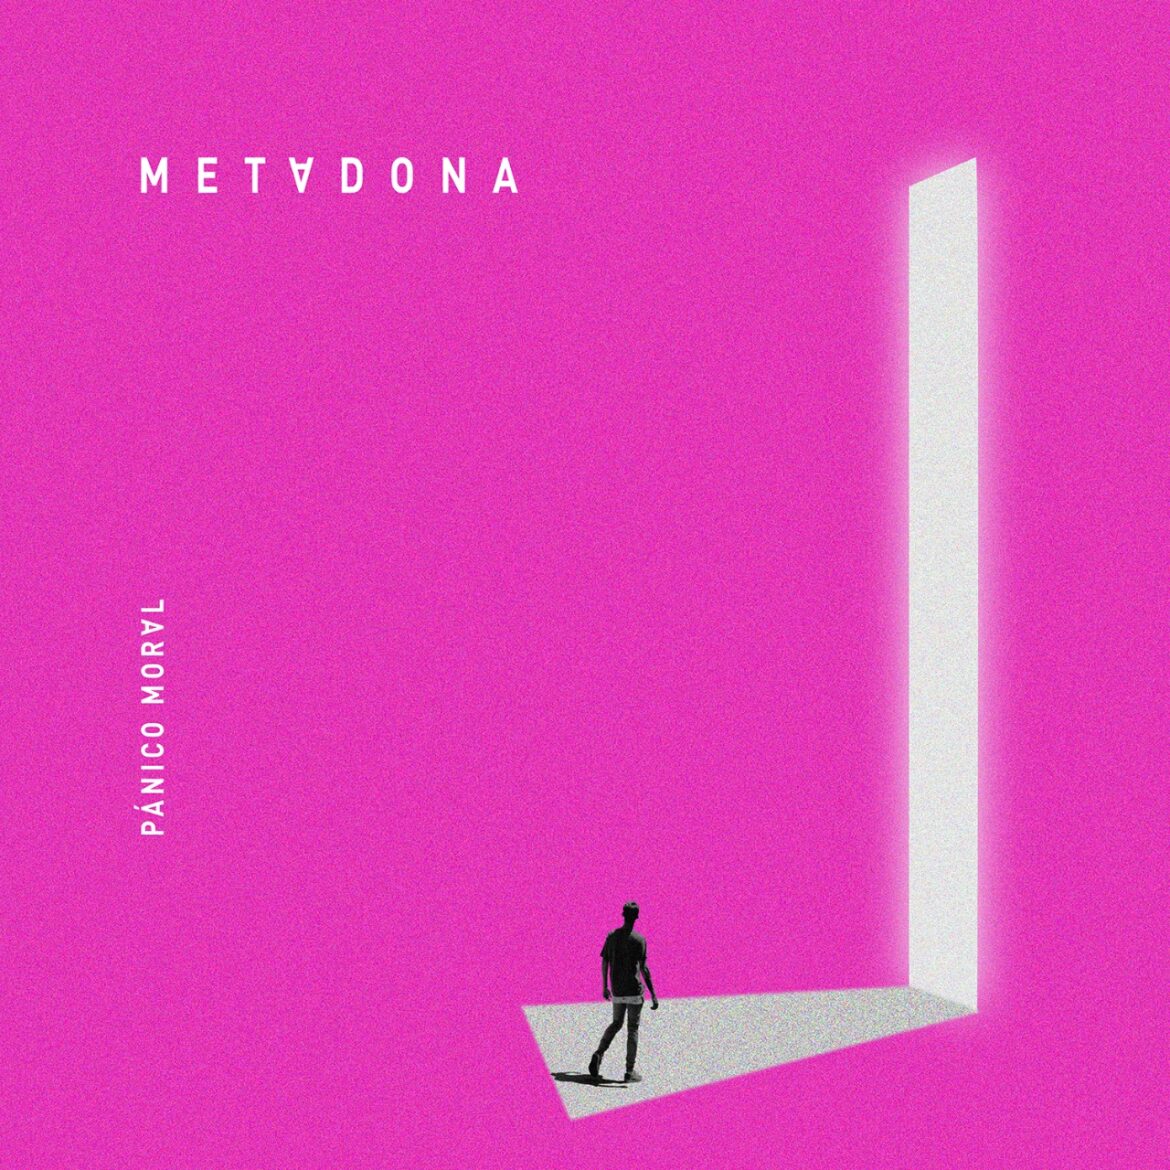 Metadona lanza ‘Pánico Moral’, un disco para enfrentar los miedos y expresar los sentimientos